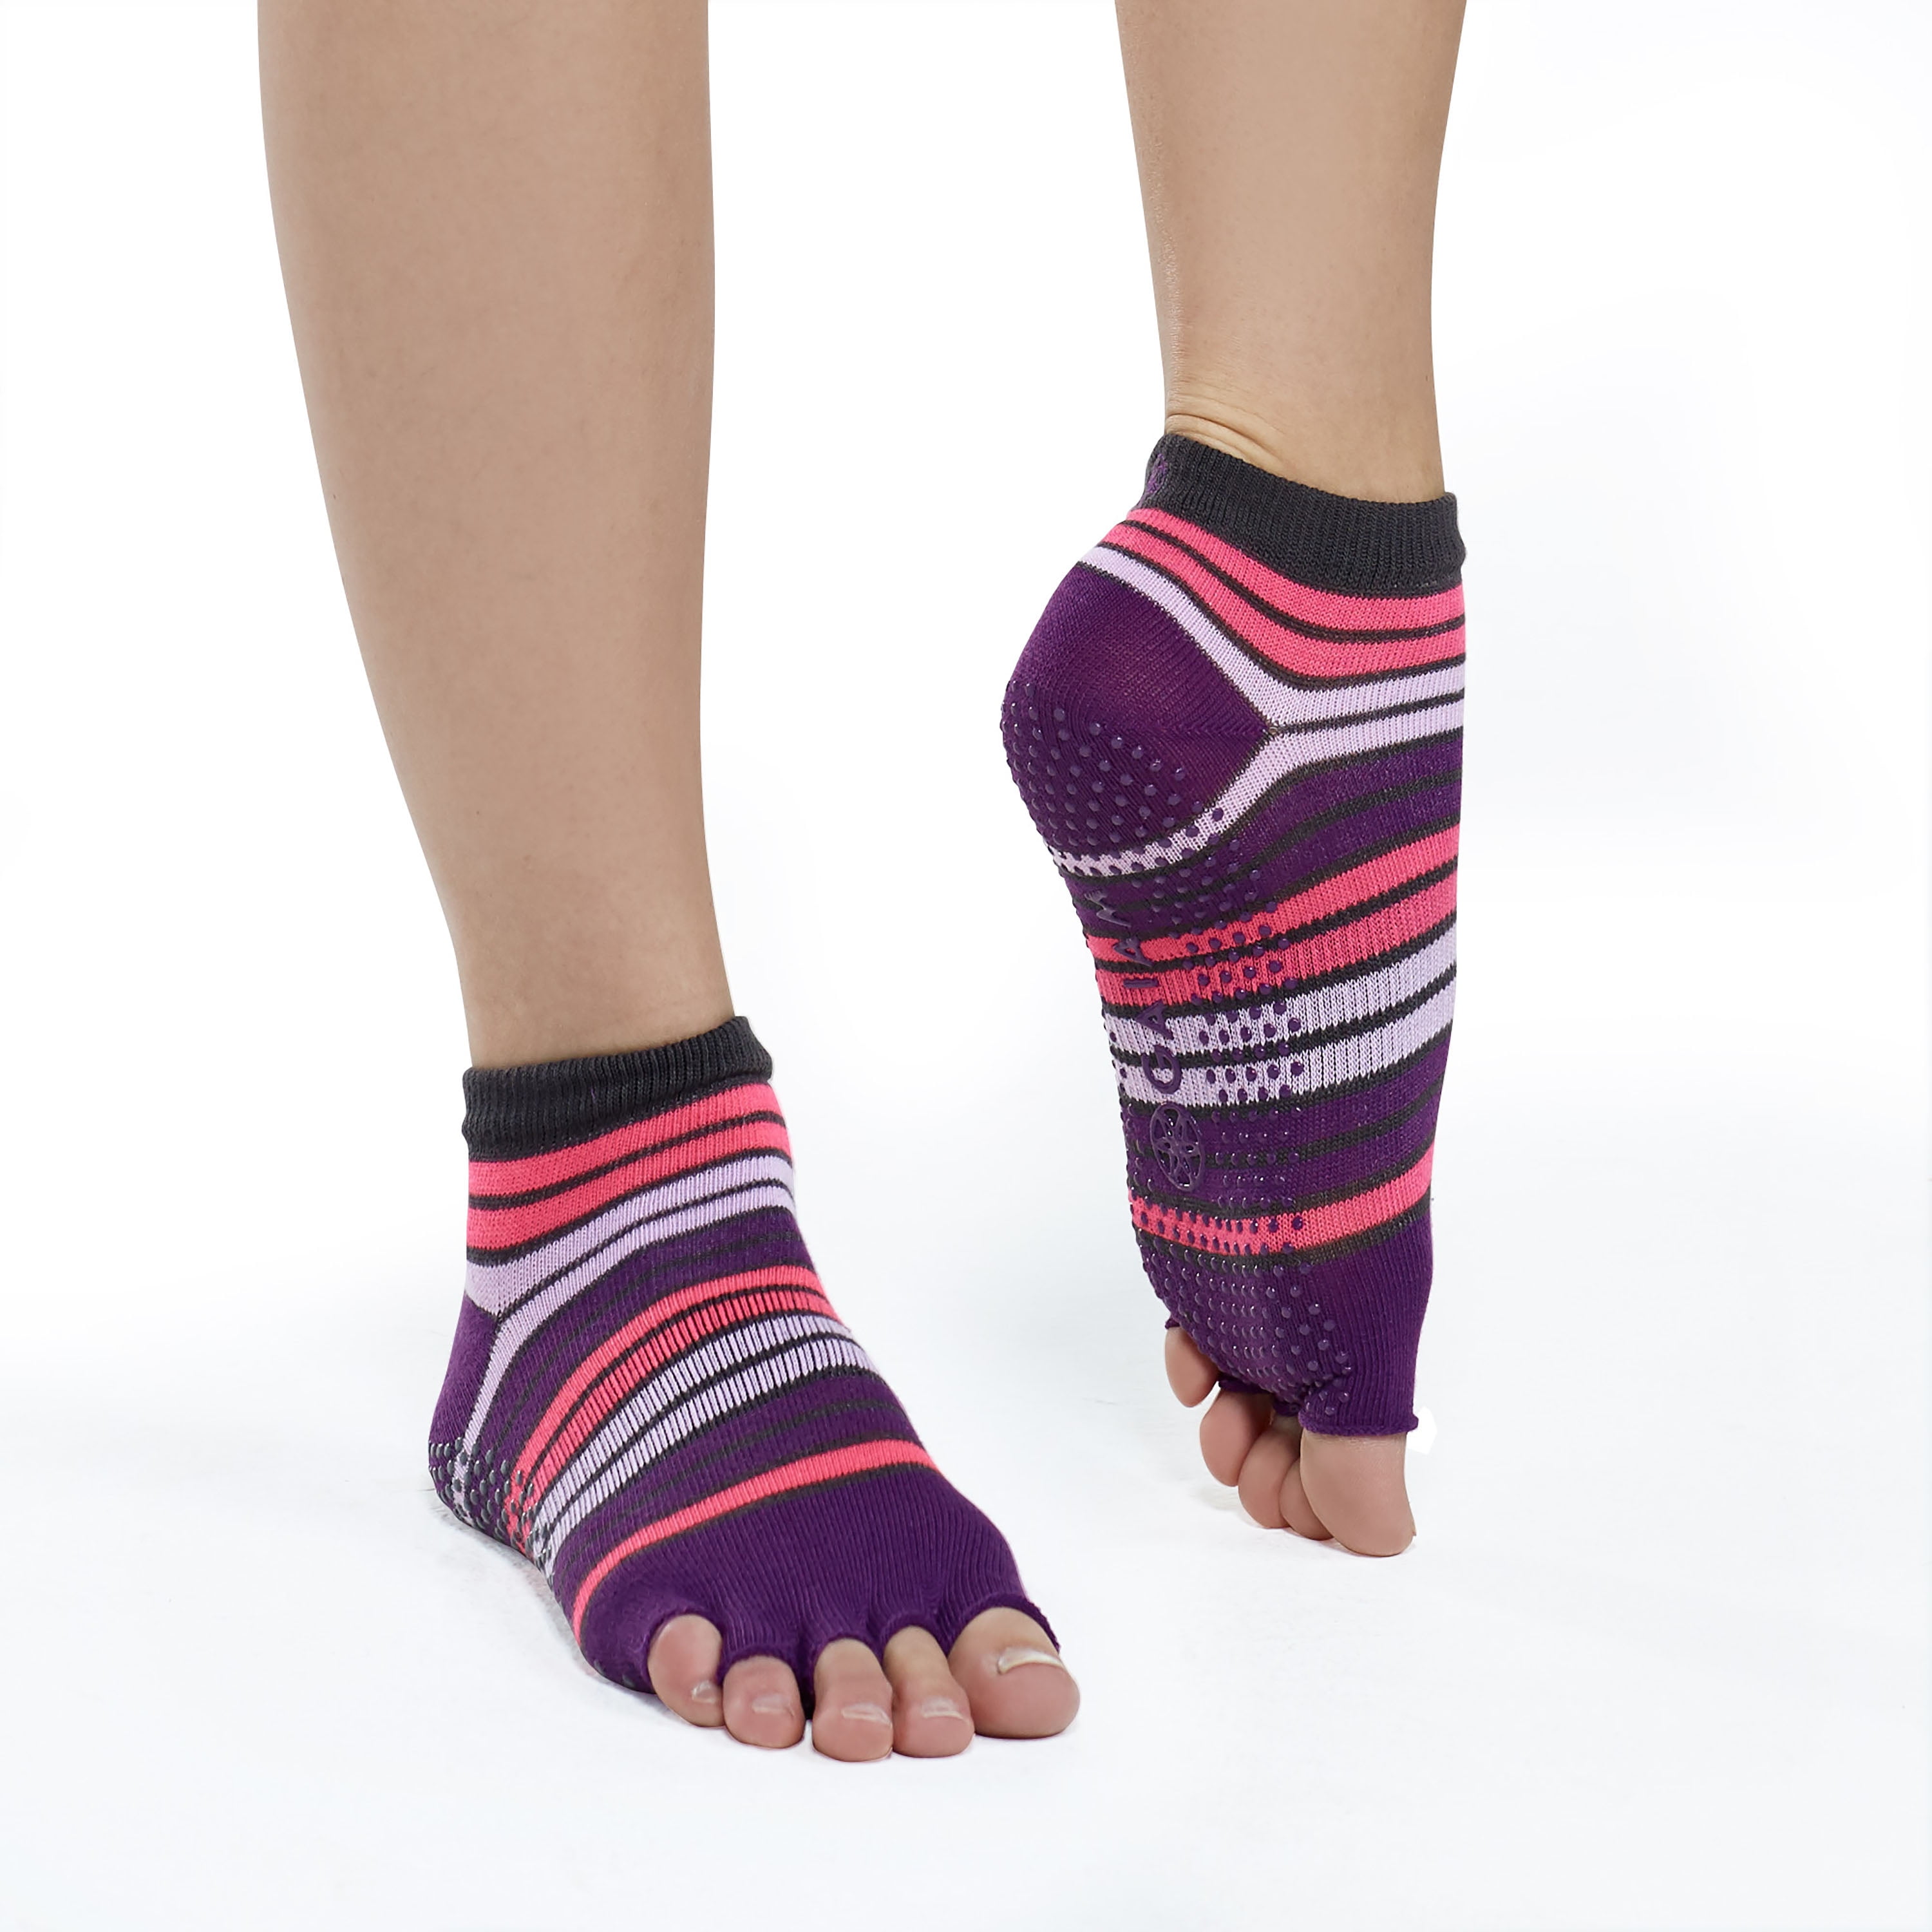 Black/Grey Grippy Yoga-Barre Socks by Gaiam at Fleet Farm